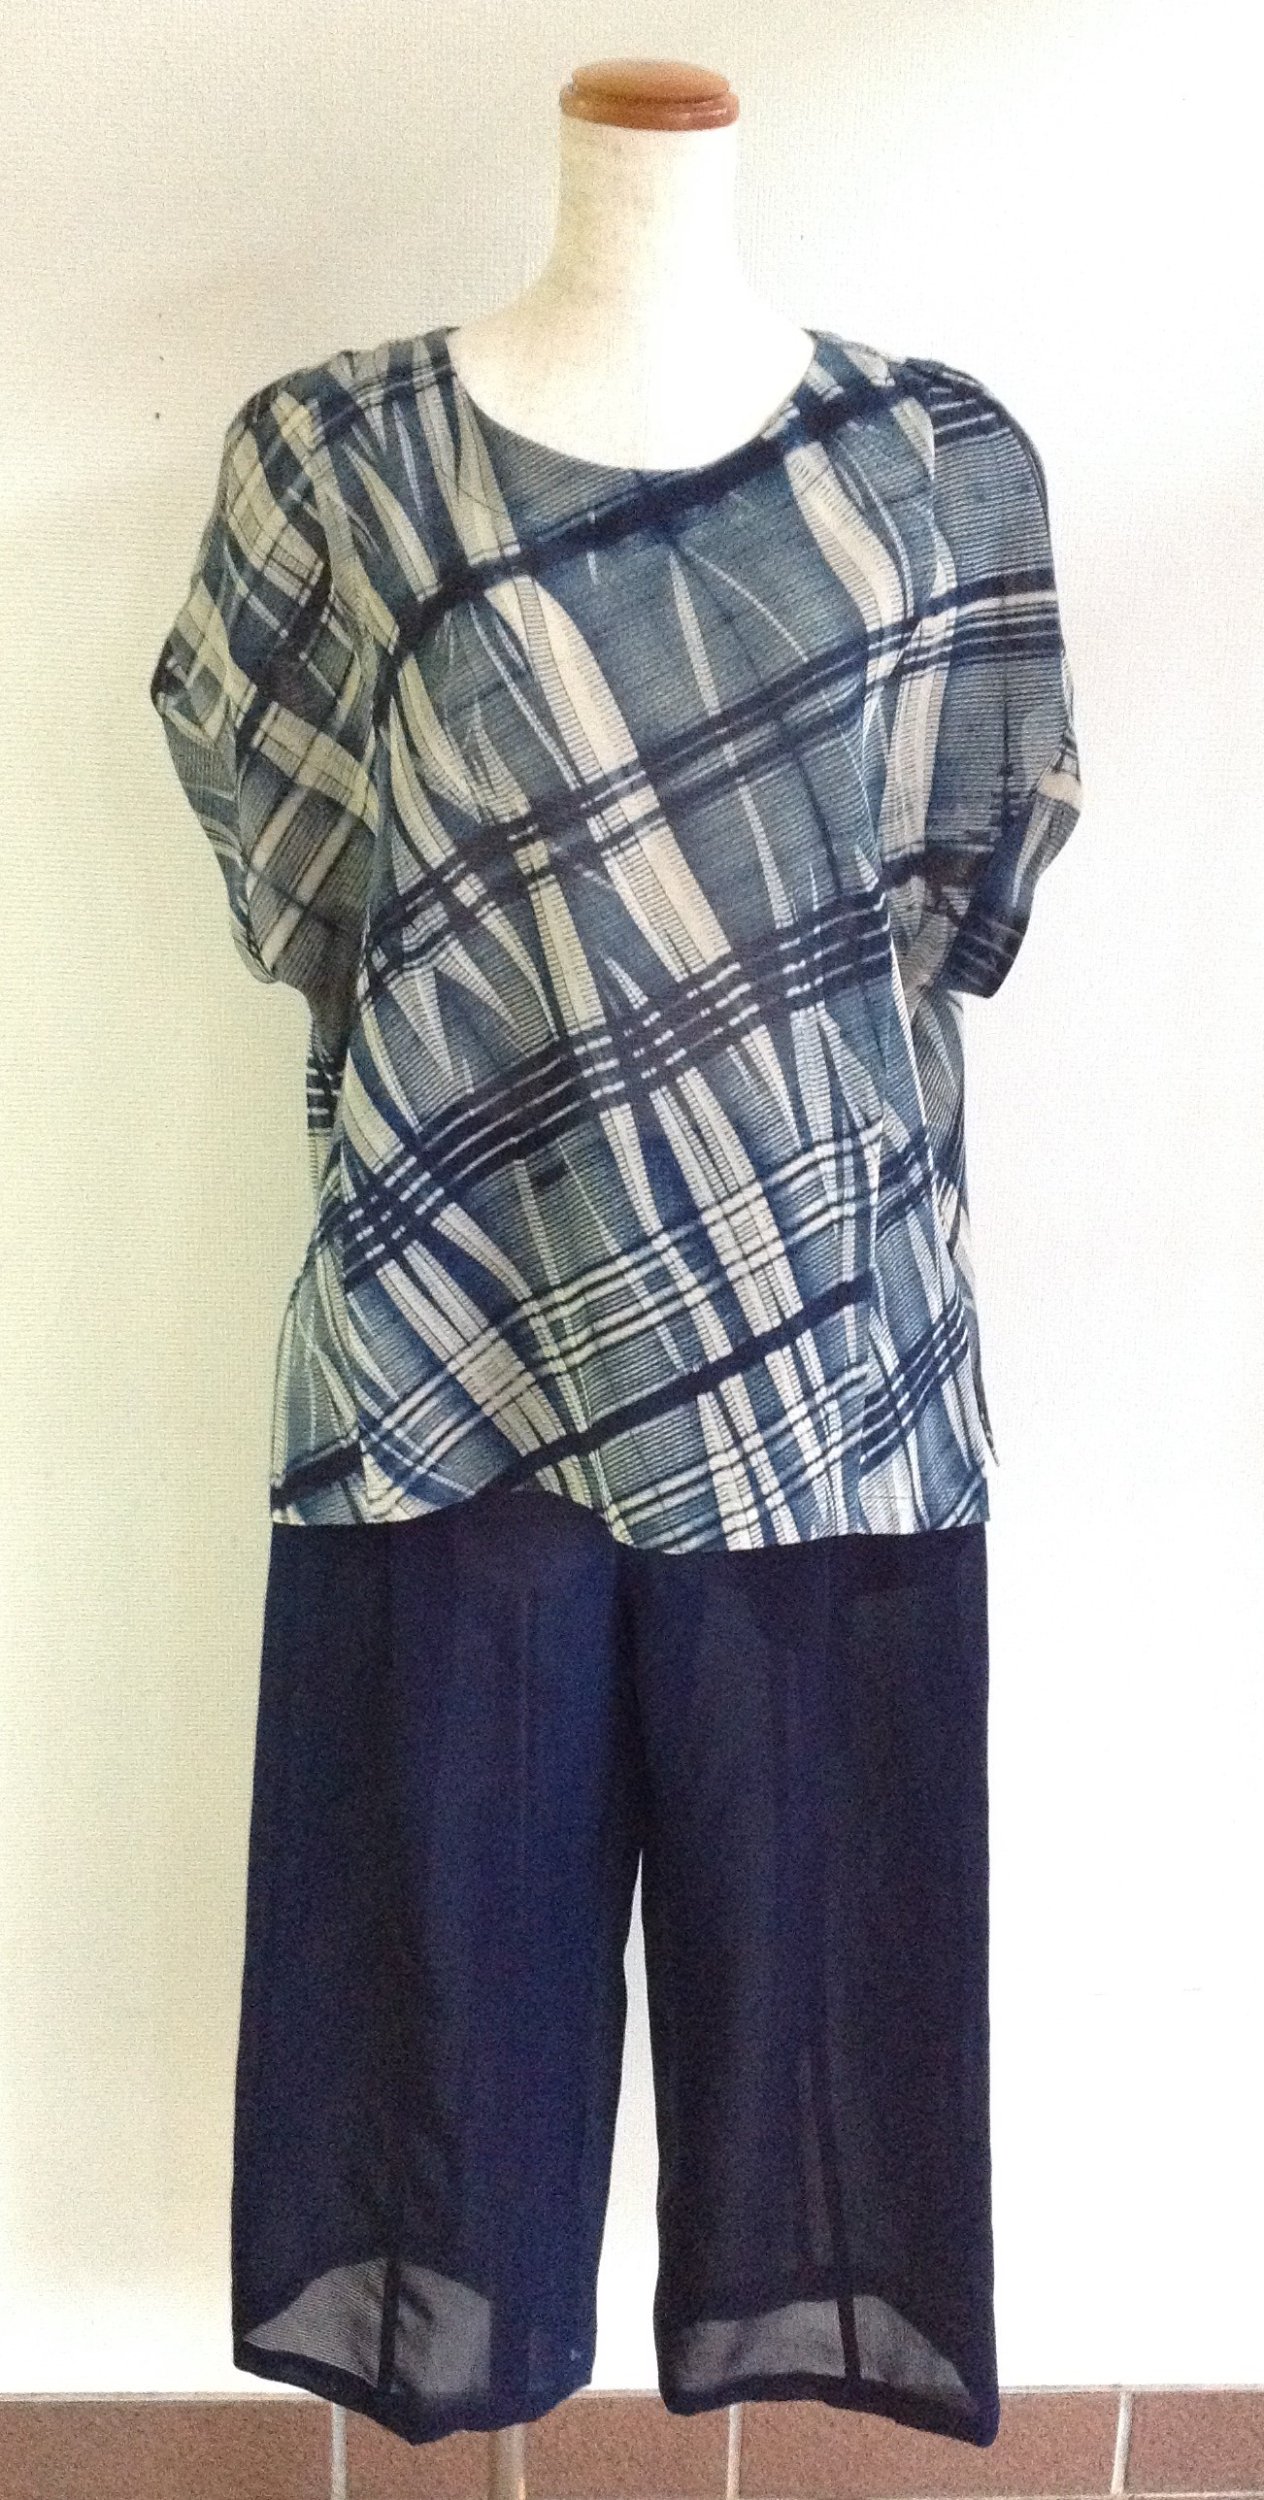 伝統織物のトップブランド夏塩沢に本藍染めを施した洋服オリジナル